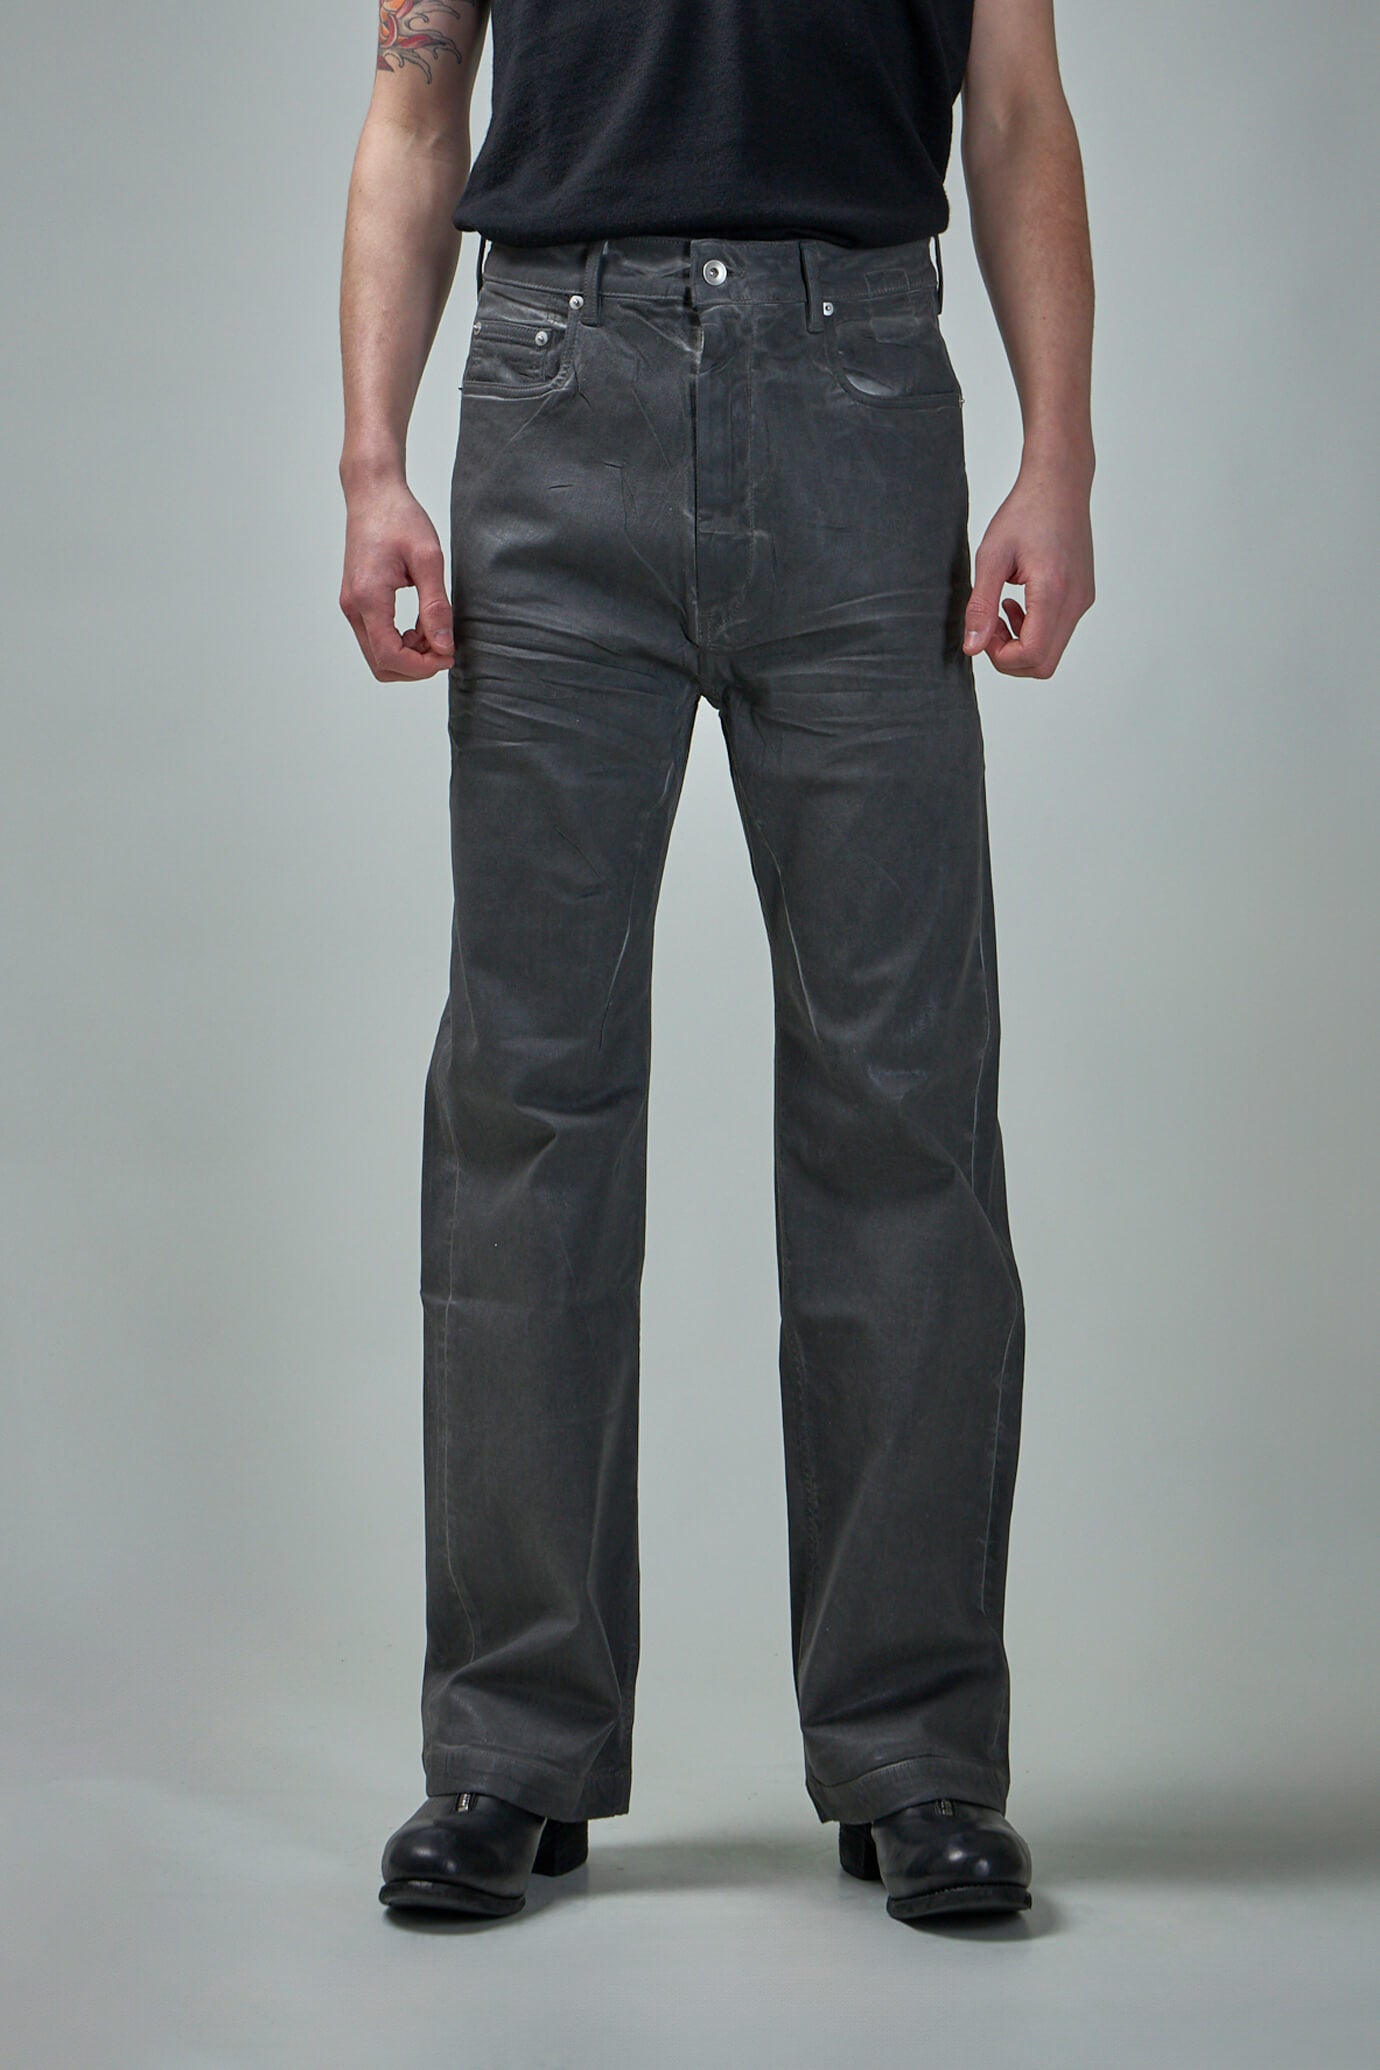 新品《 Rick Owens DRKSHDW 》Geth Jeans 30 | www.gamutgallerympls.com